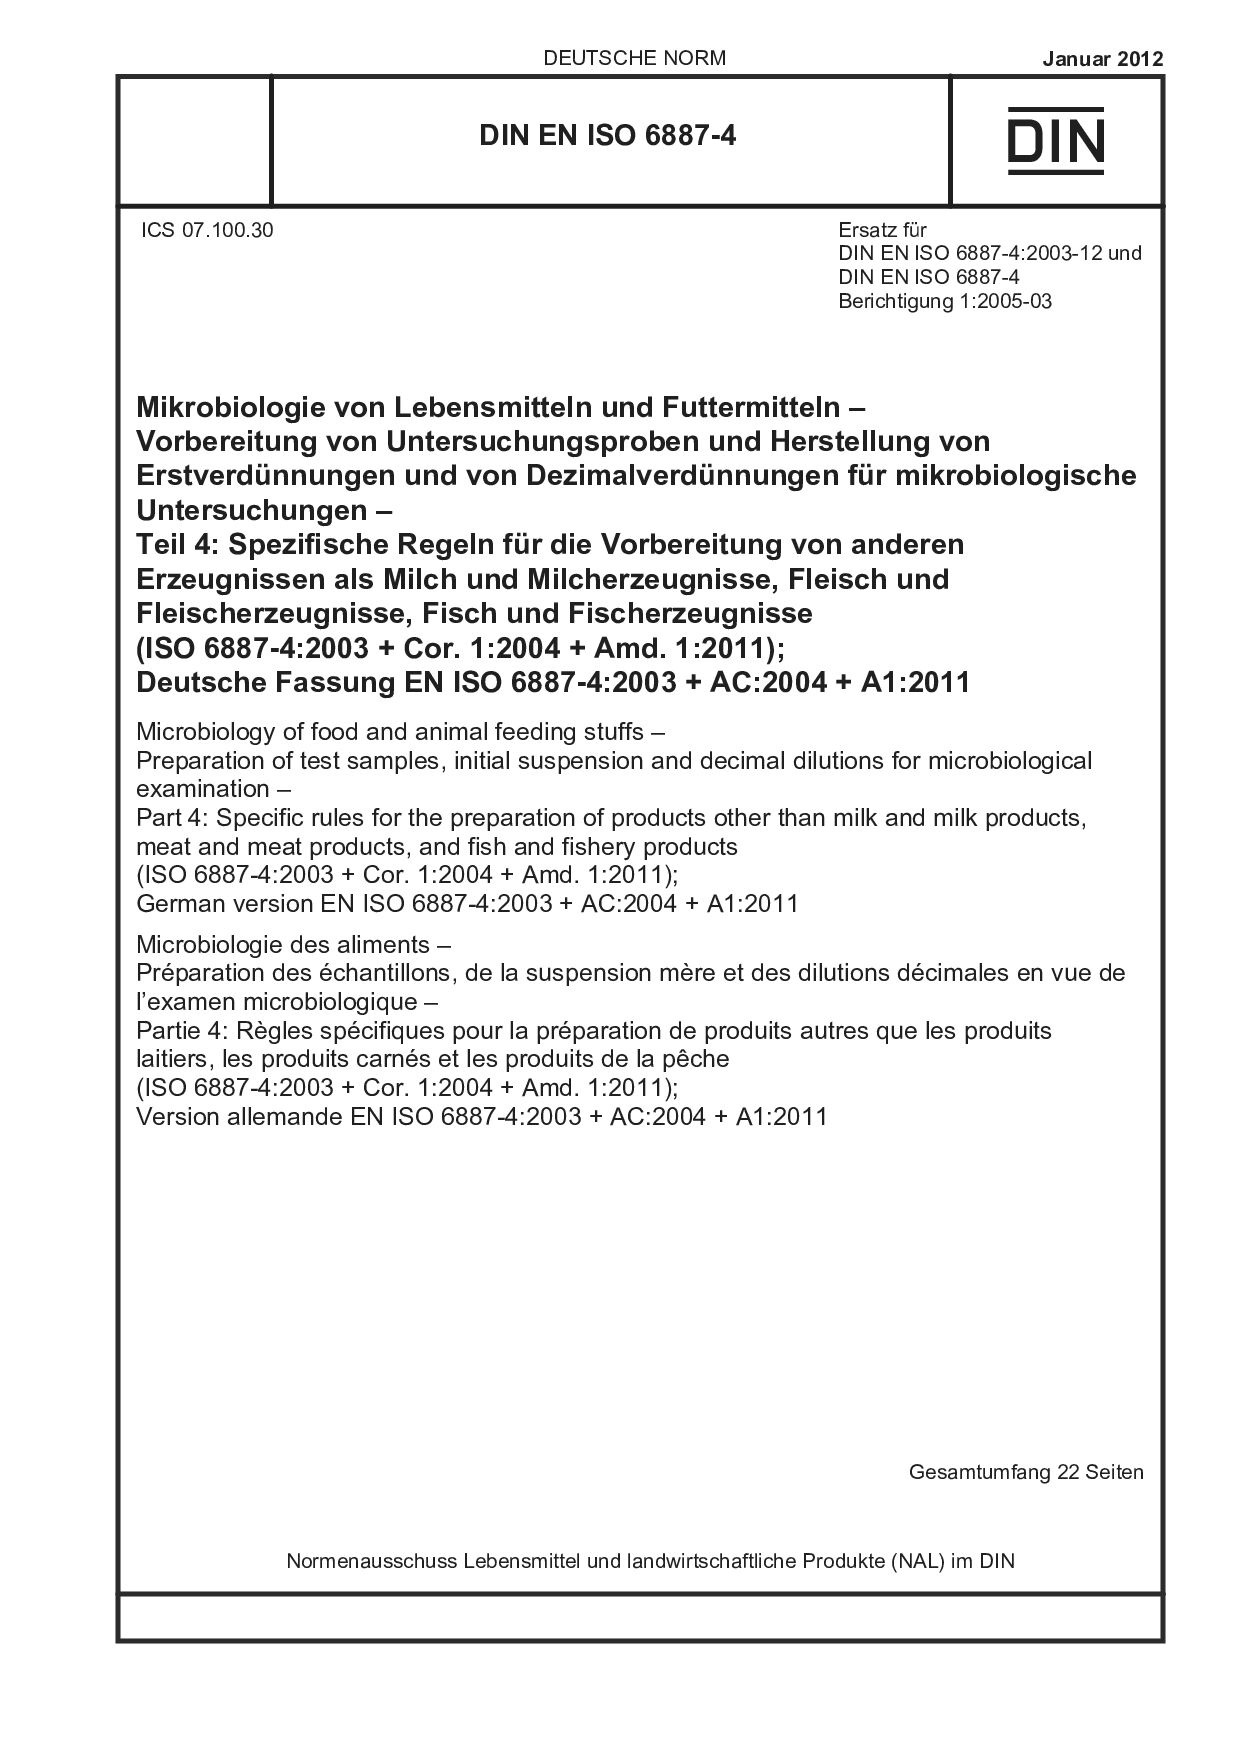 DIN EN ISO 6887-4:2012封面图